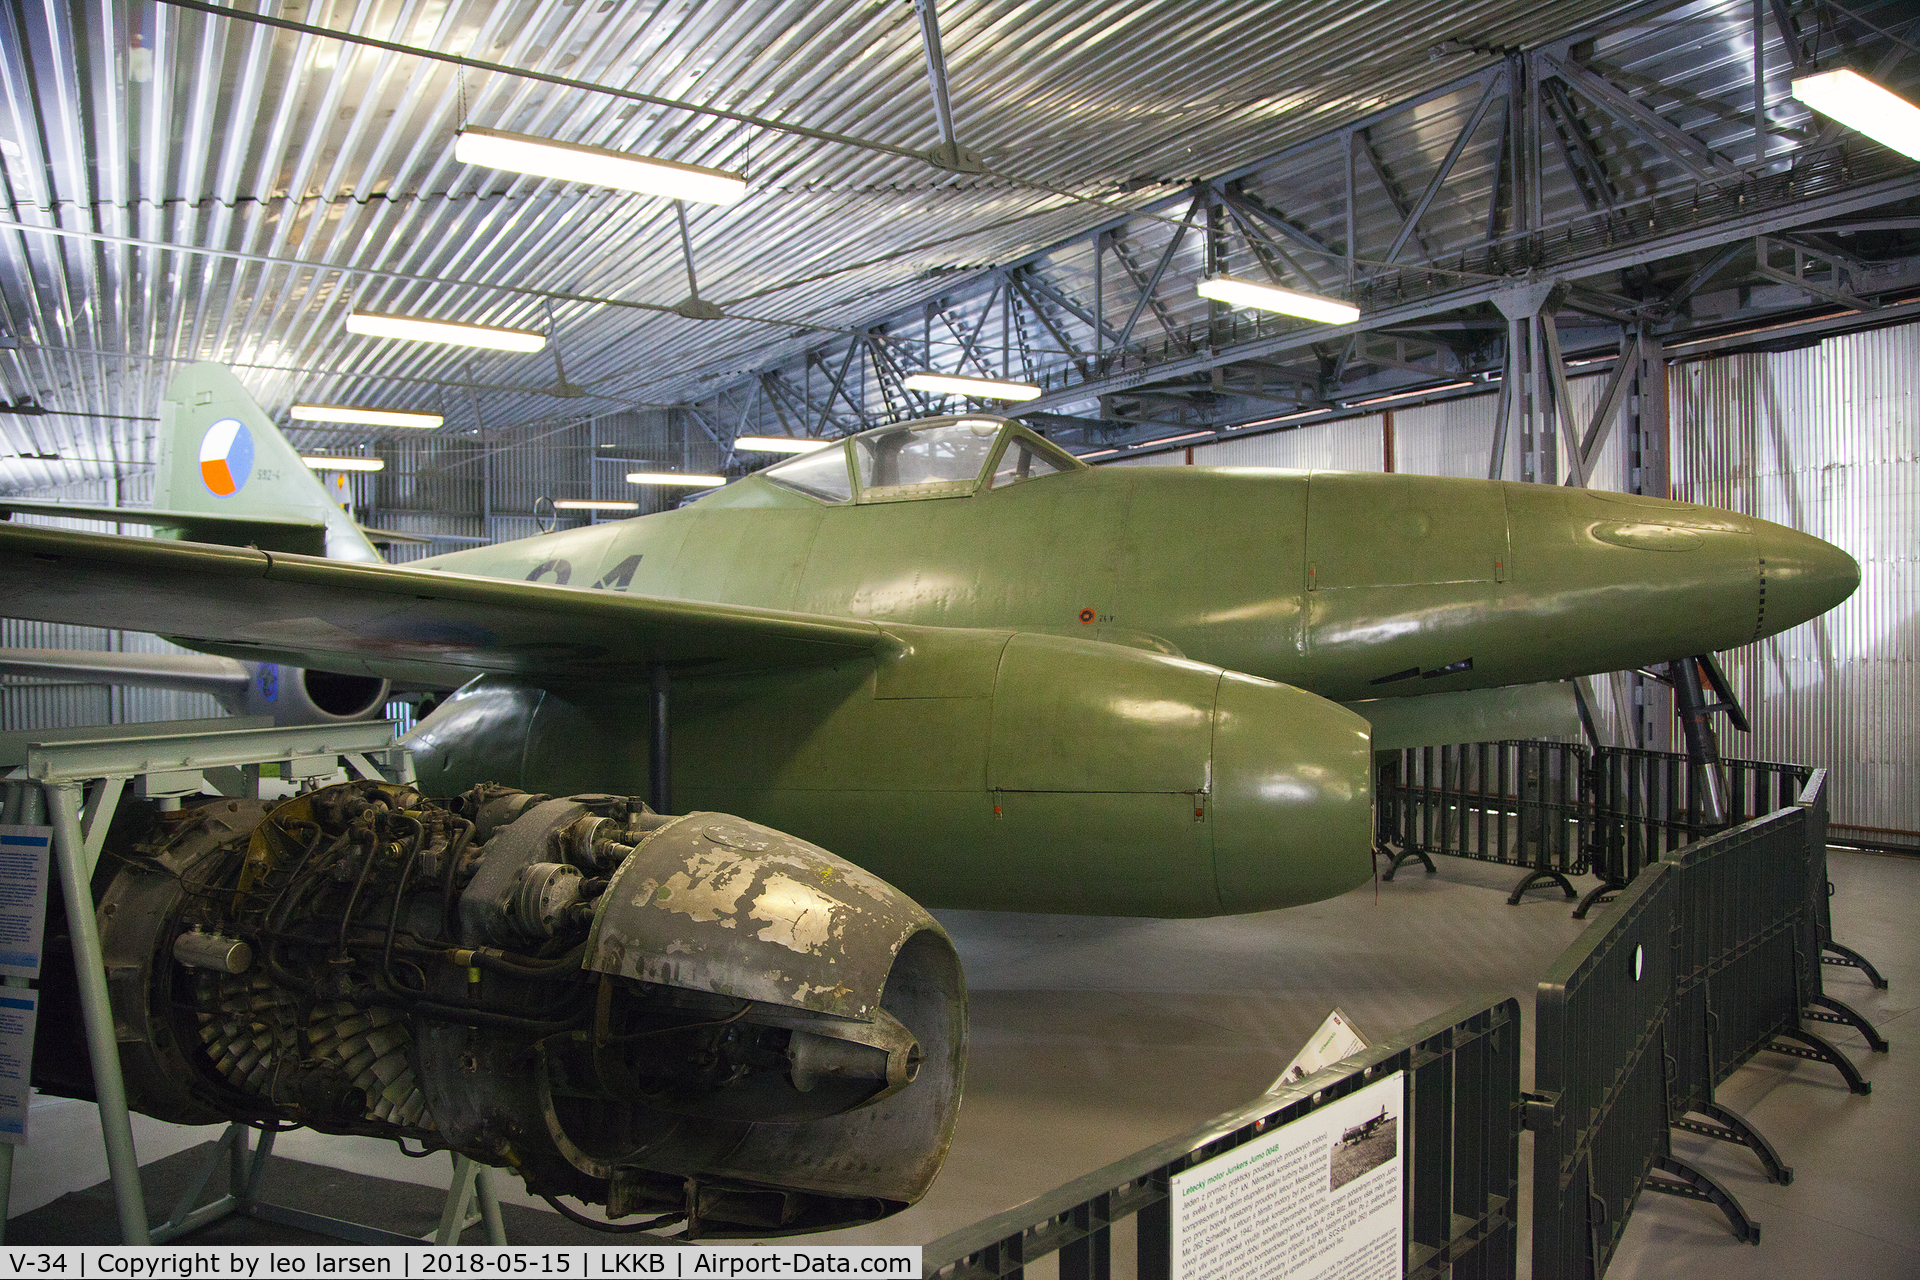 V-34, 1946 Avia S-92 C/N 4, Kbely Air Museum 15.5.2018